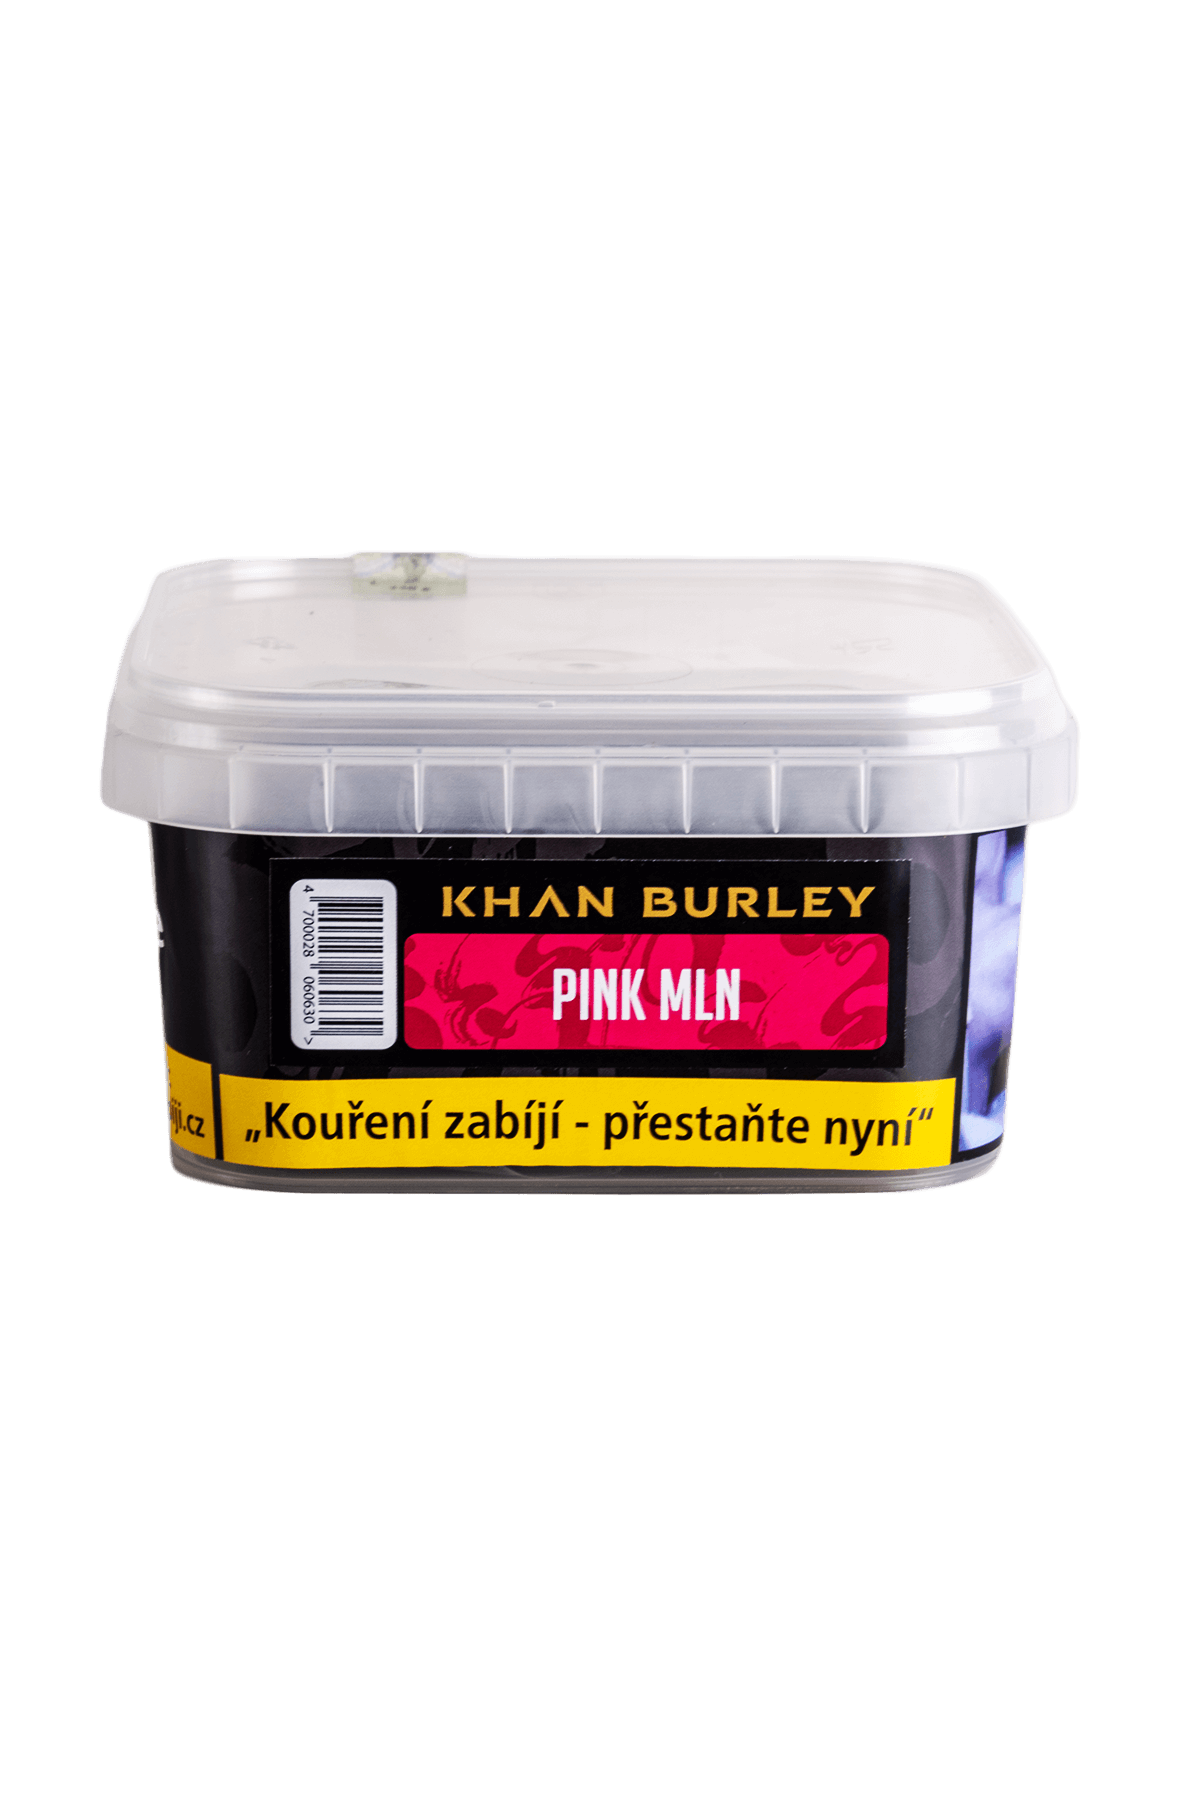 Tabák - Khan Burley 250g - Pink Melon